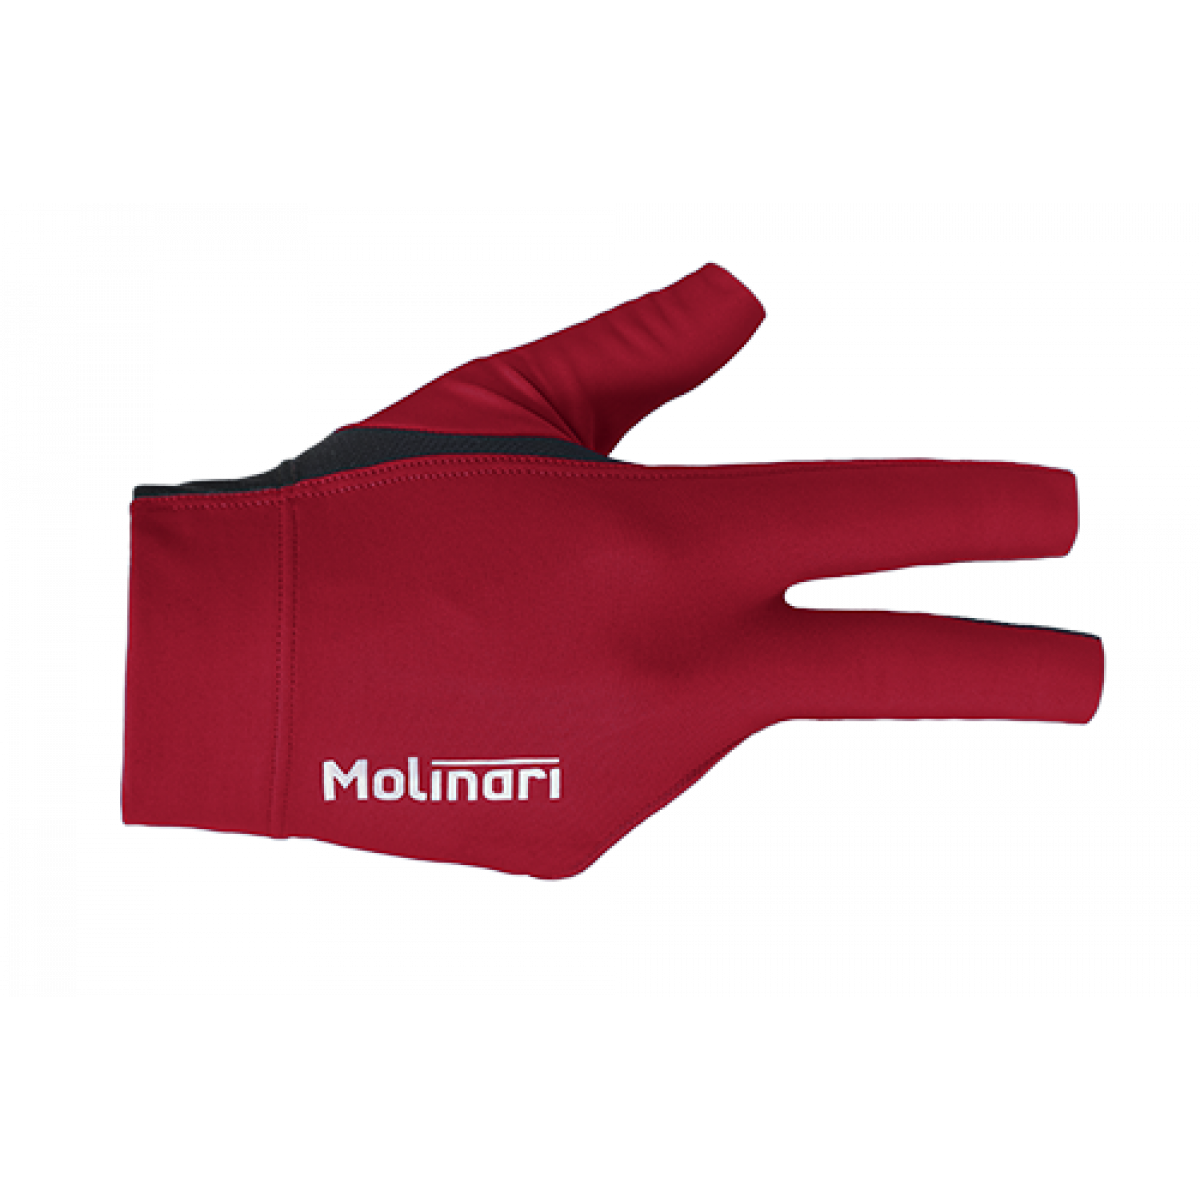 Rukavička Molinari Red - pravá univerzální- kulečníková rukavice